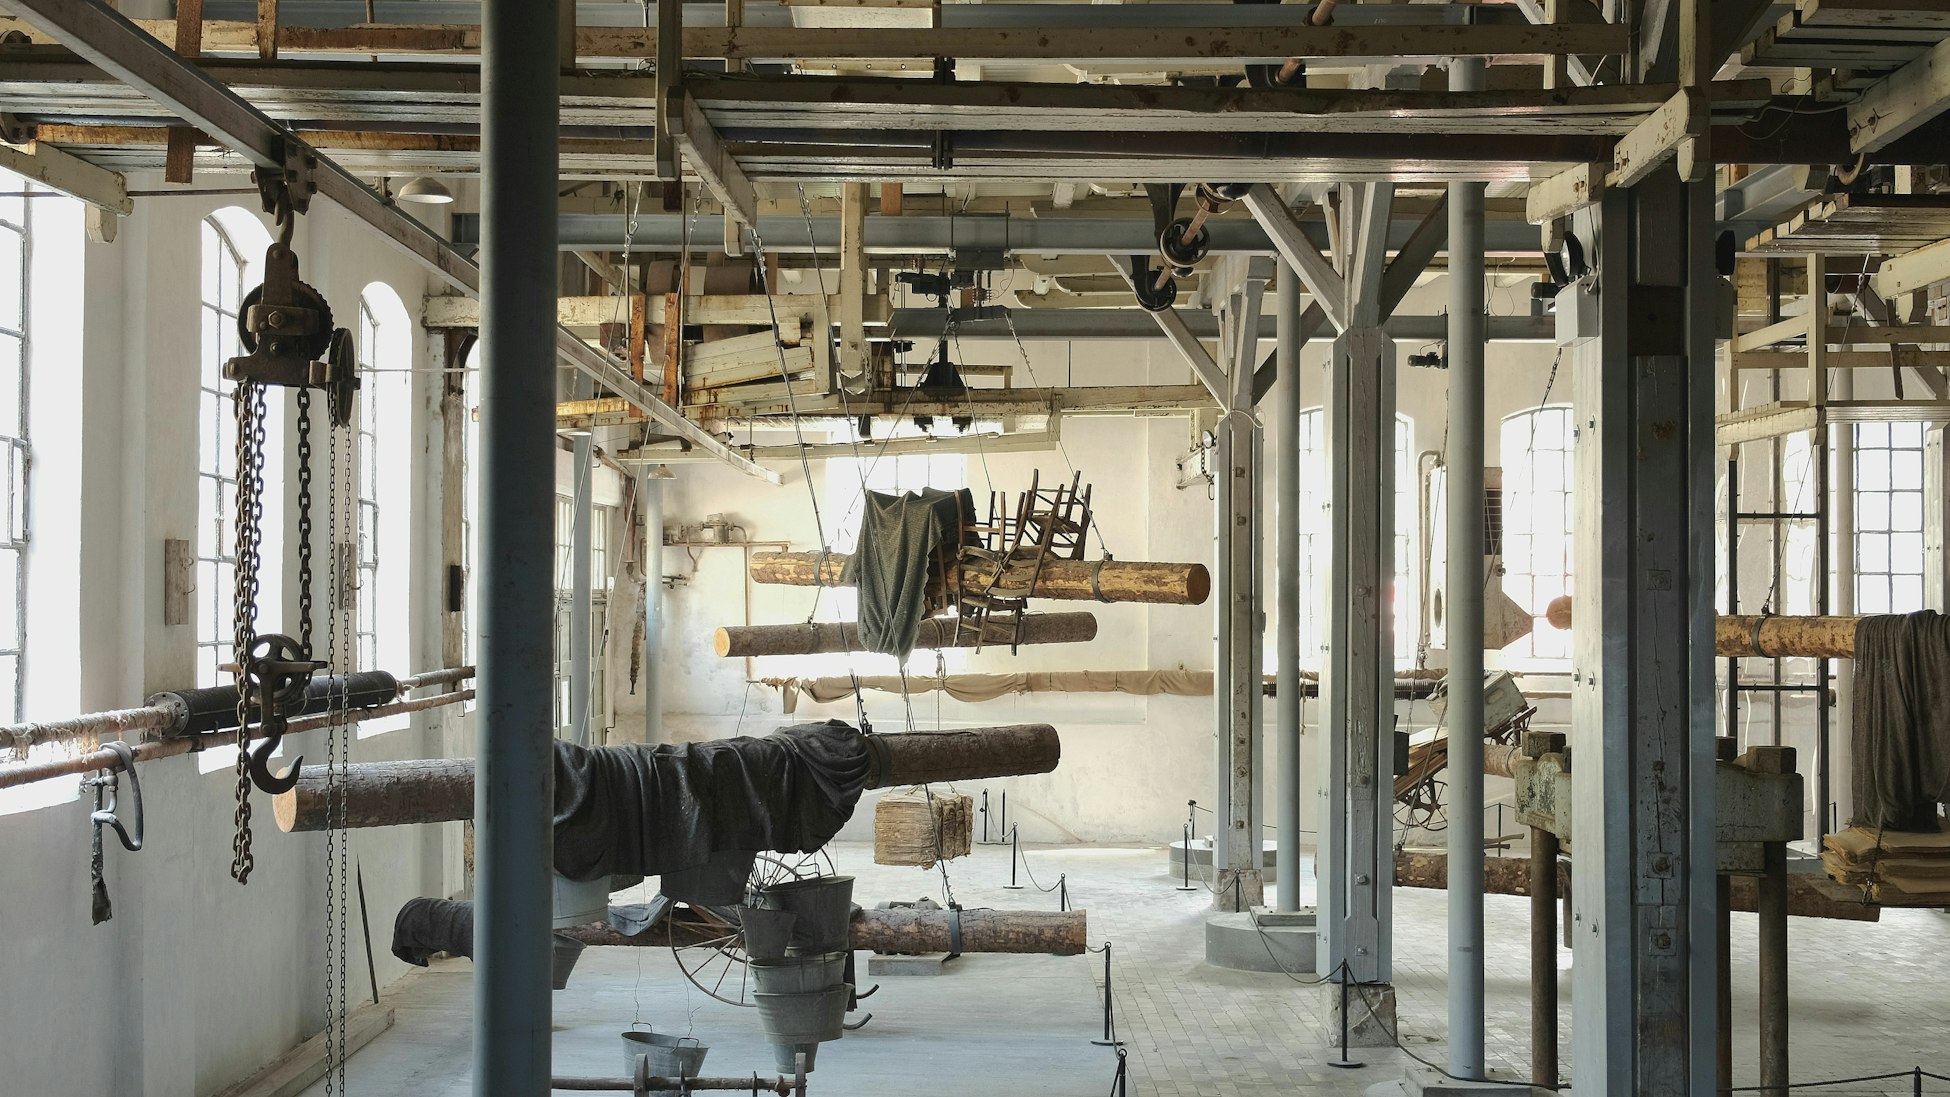 Bildet viser et gammelt fabrikkloakle som i dag er omgjort til et industrimuseum. Utsmykket med en installasjon som blant annet består av tømmerstokker og stoler.